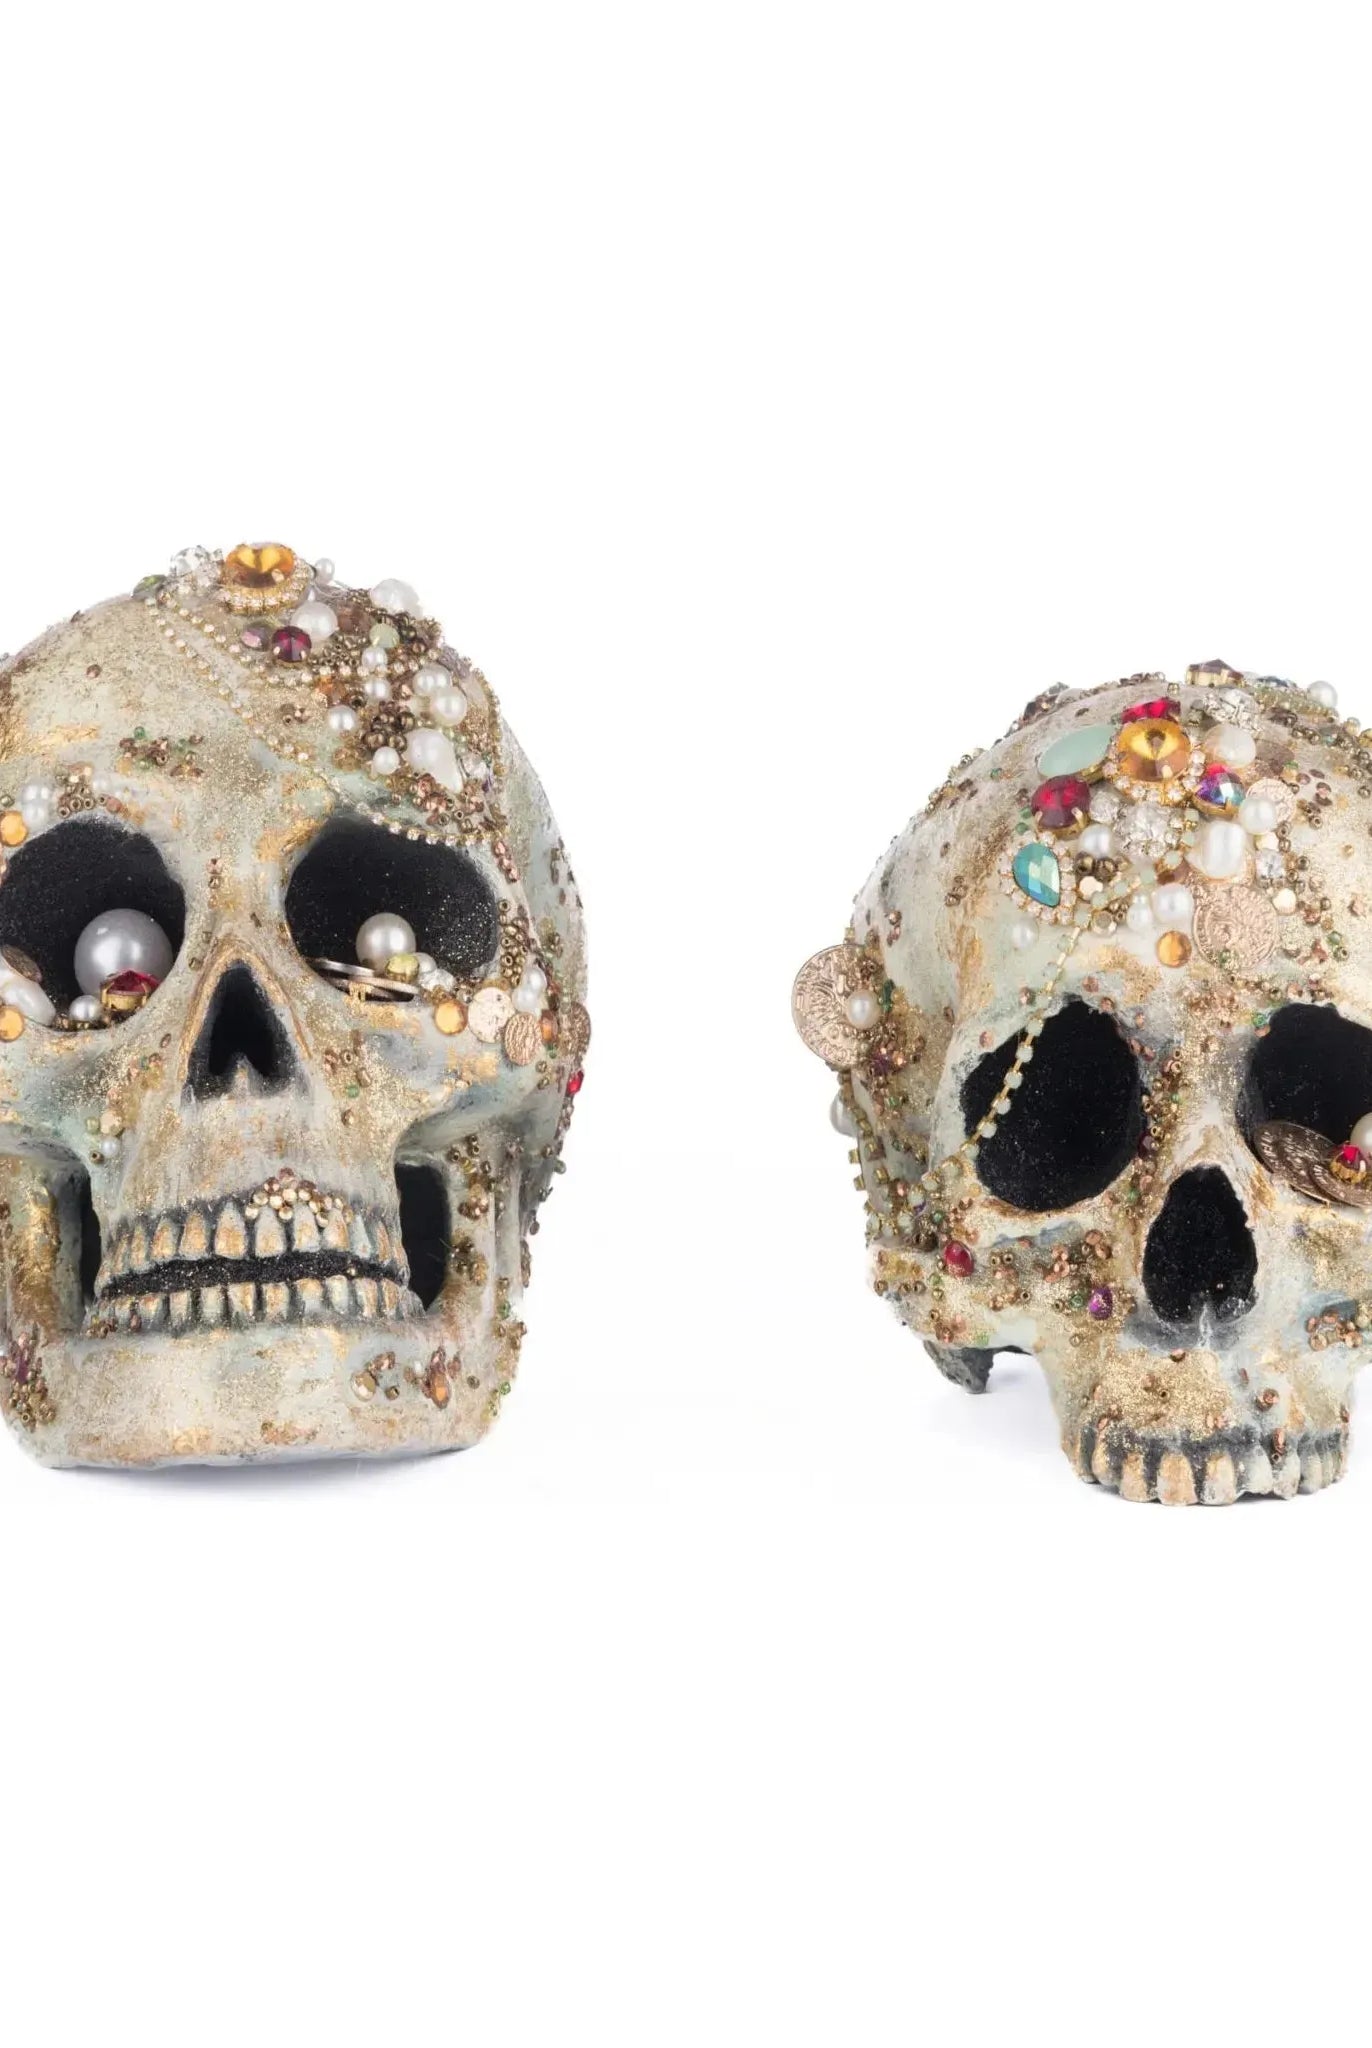 Tabletop Jewel Encrusted Skulls Assortment of 2 - Michelle's aDOORable Creations - Halloween Decor